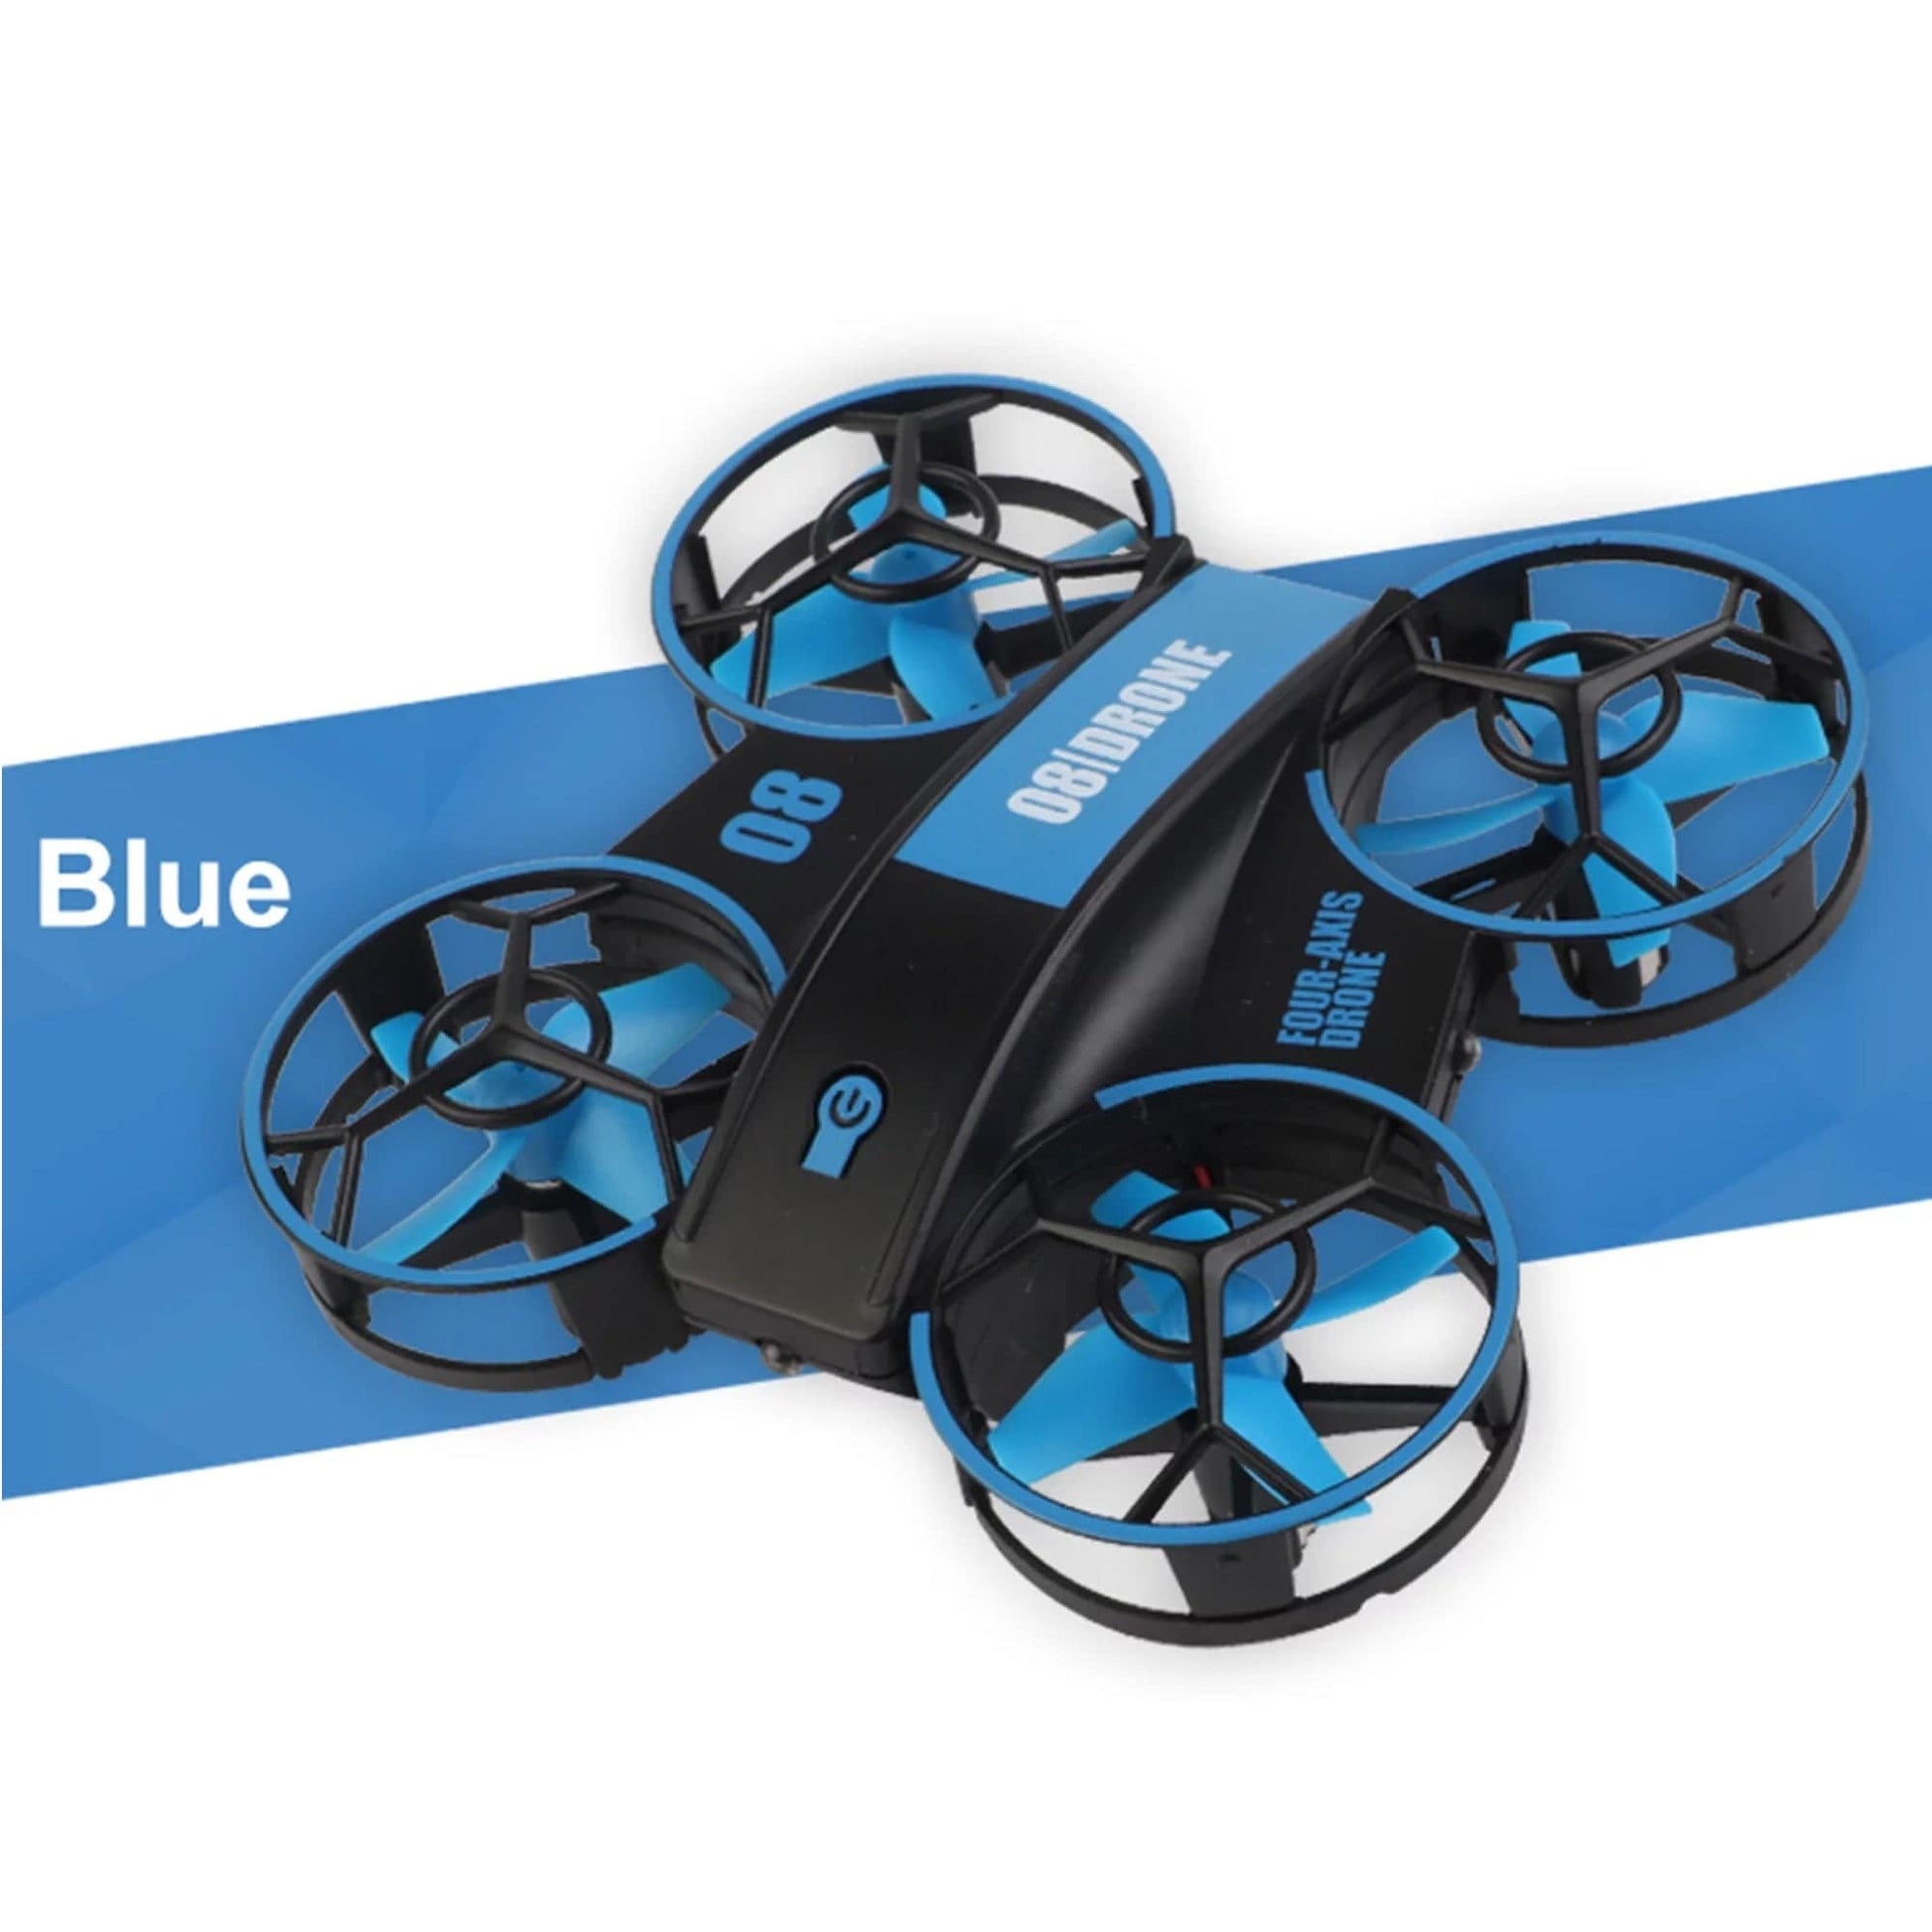 RH-821 08 Mini Quadcopter Drone Lighting UFO Drone - Blue